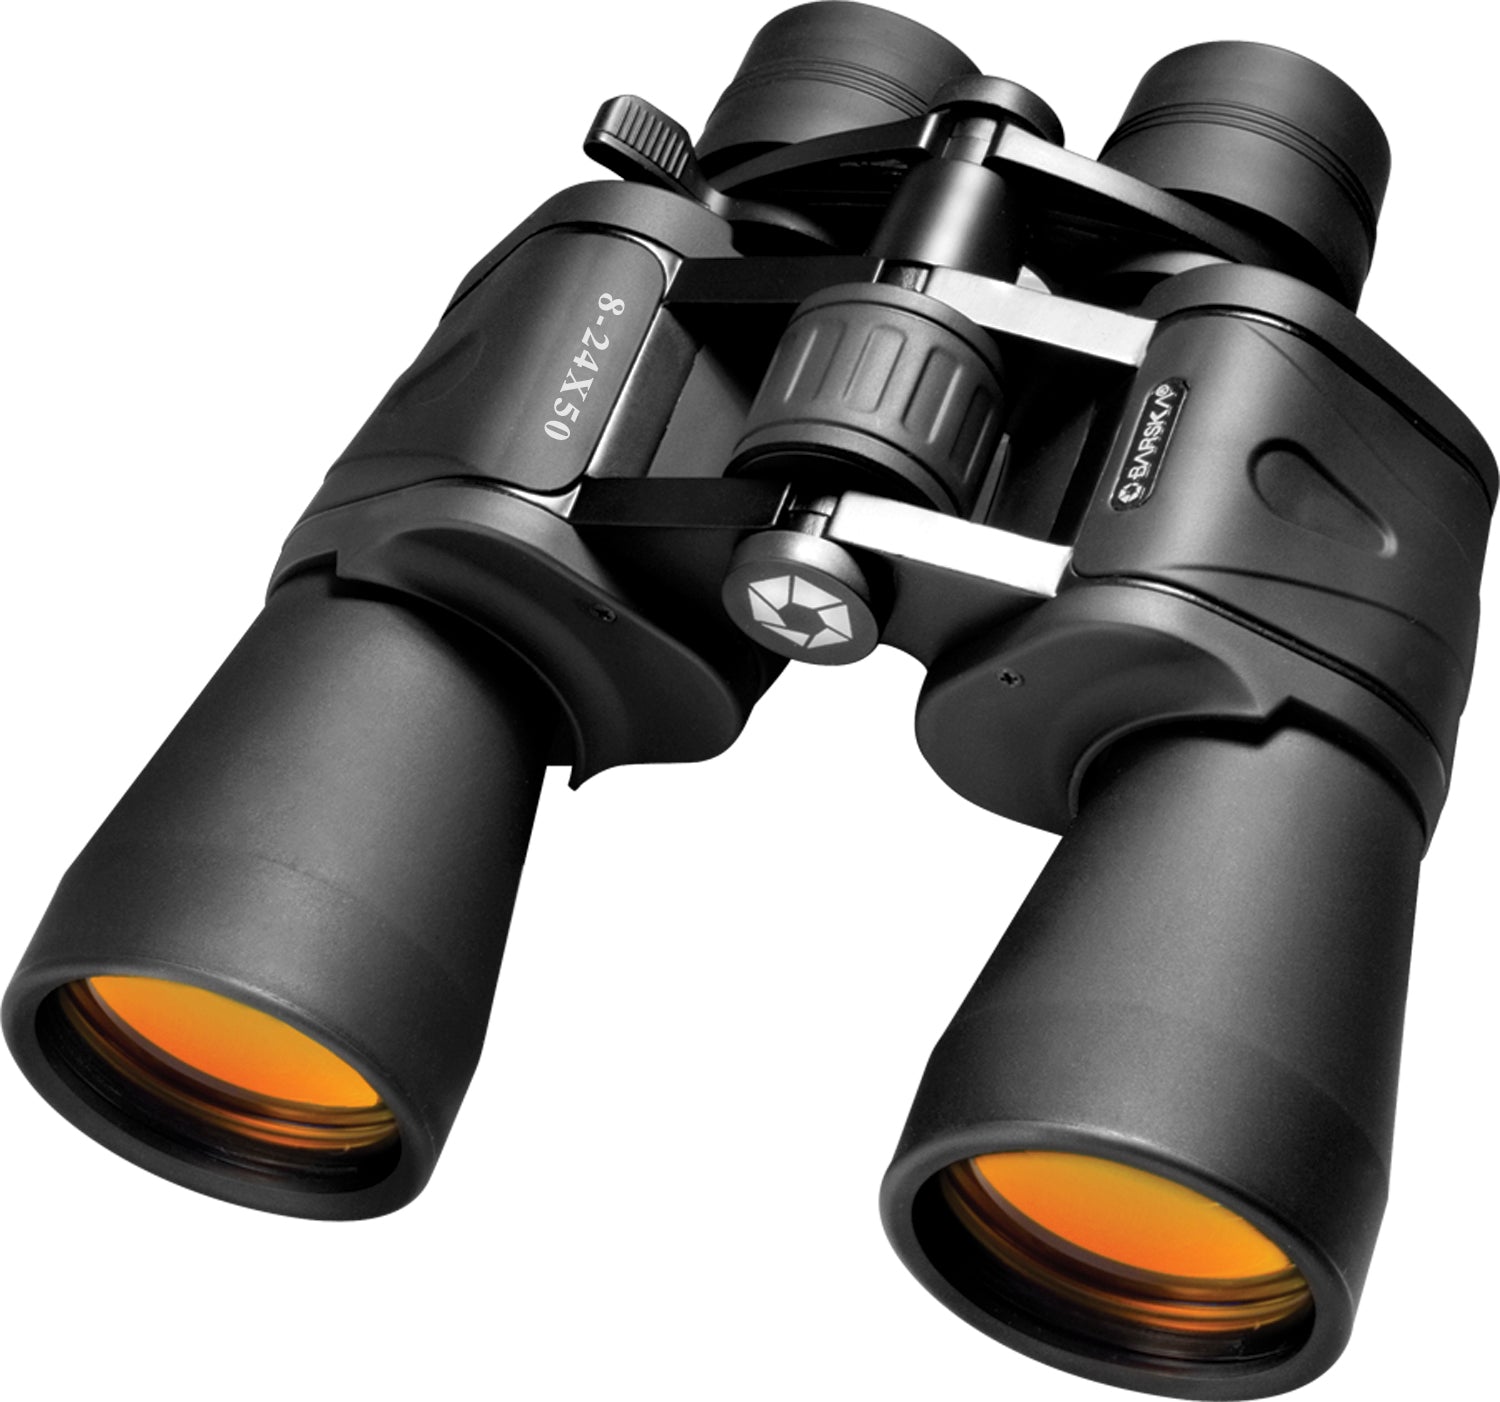 BARSKA Gladiator Zoom Binoculars, 8-24 x 50mm - AB11180